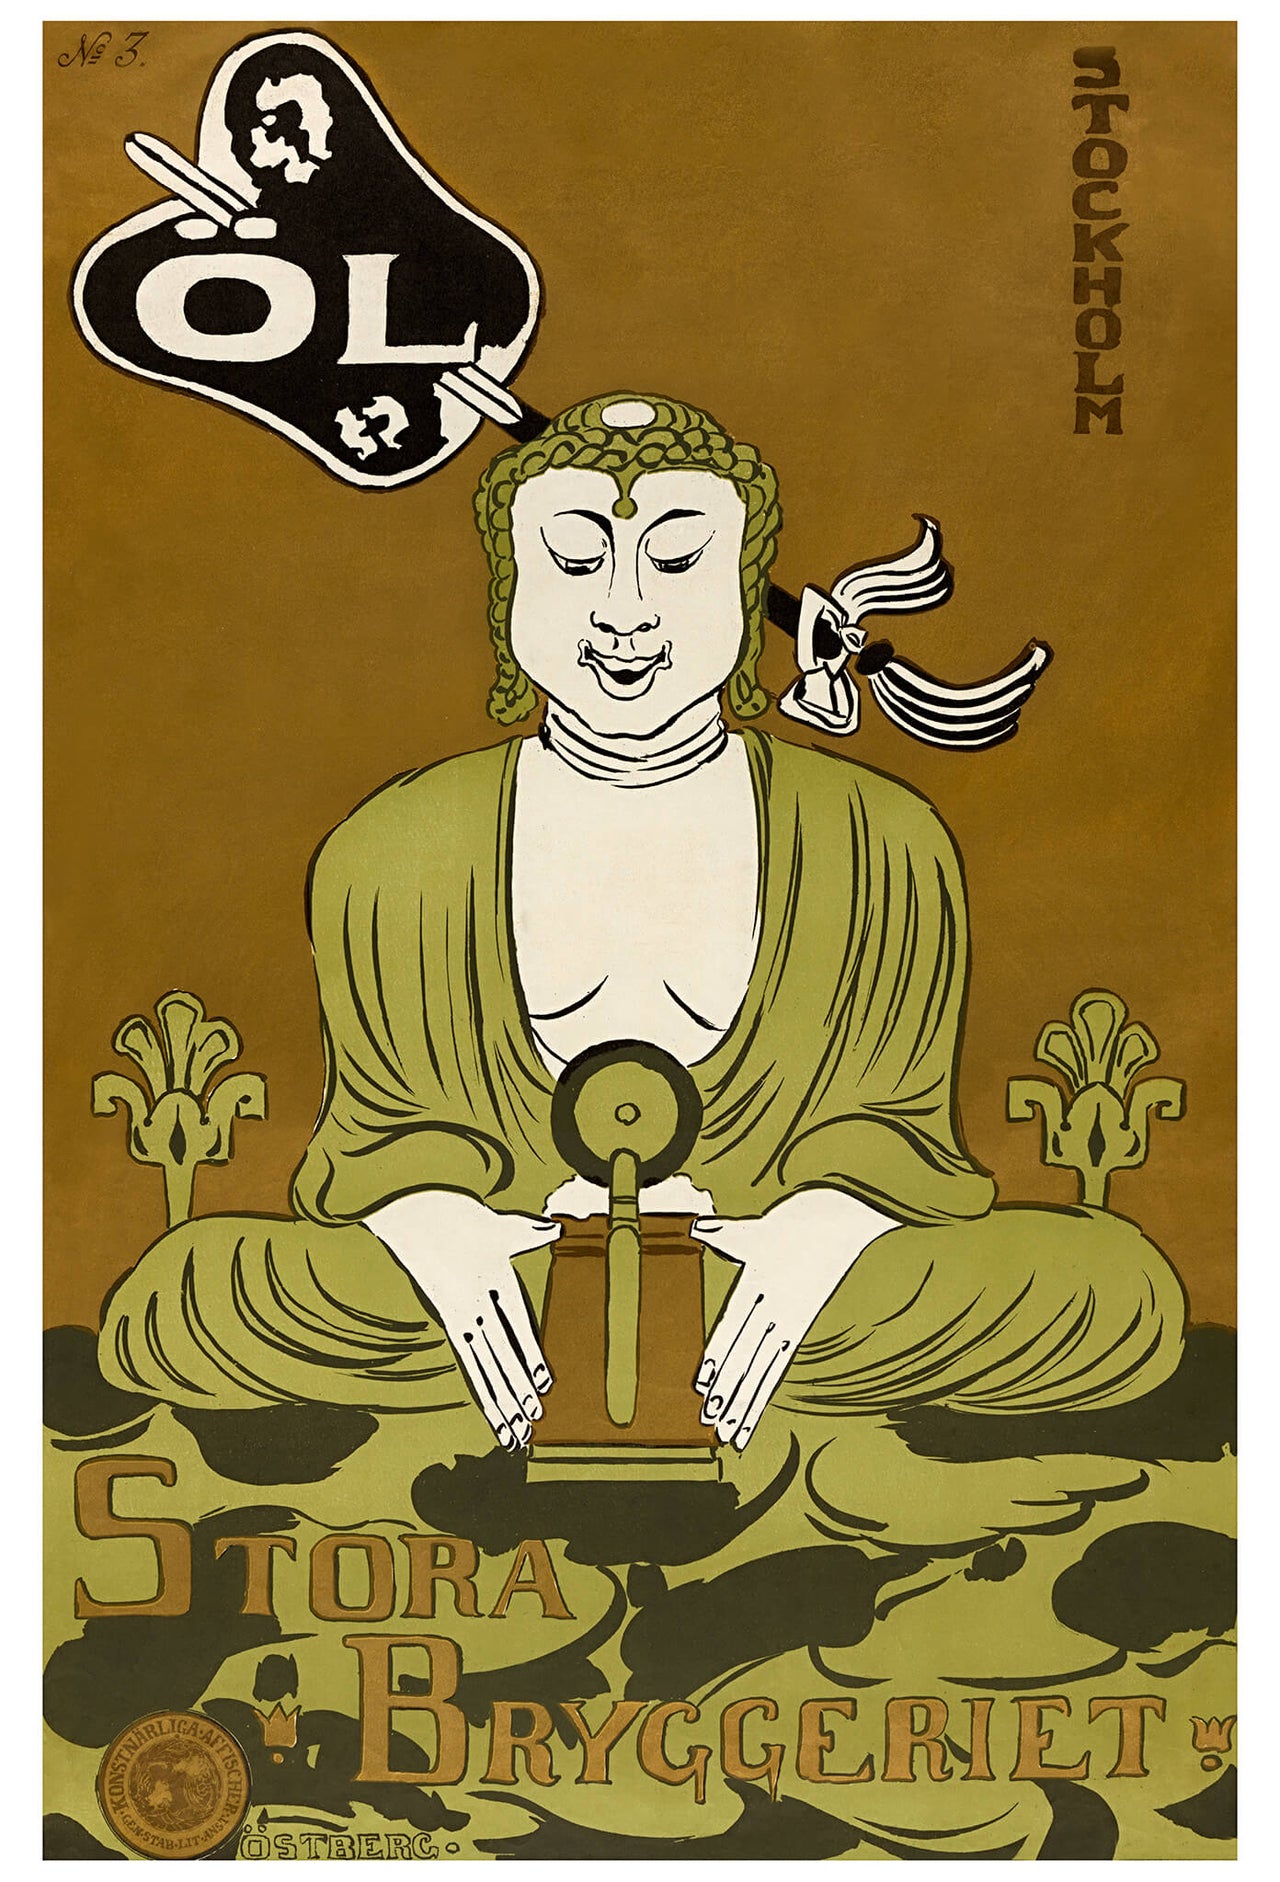 Svensk ölaffisch från 1890-talet. Anledningen för Buddhan i affischen är inte känd. Kanske en konstnärlig frihet tagen av skaparen Ragnar Östberg?